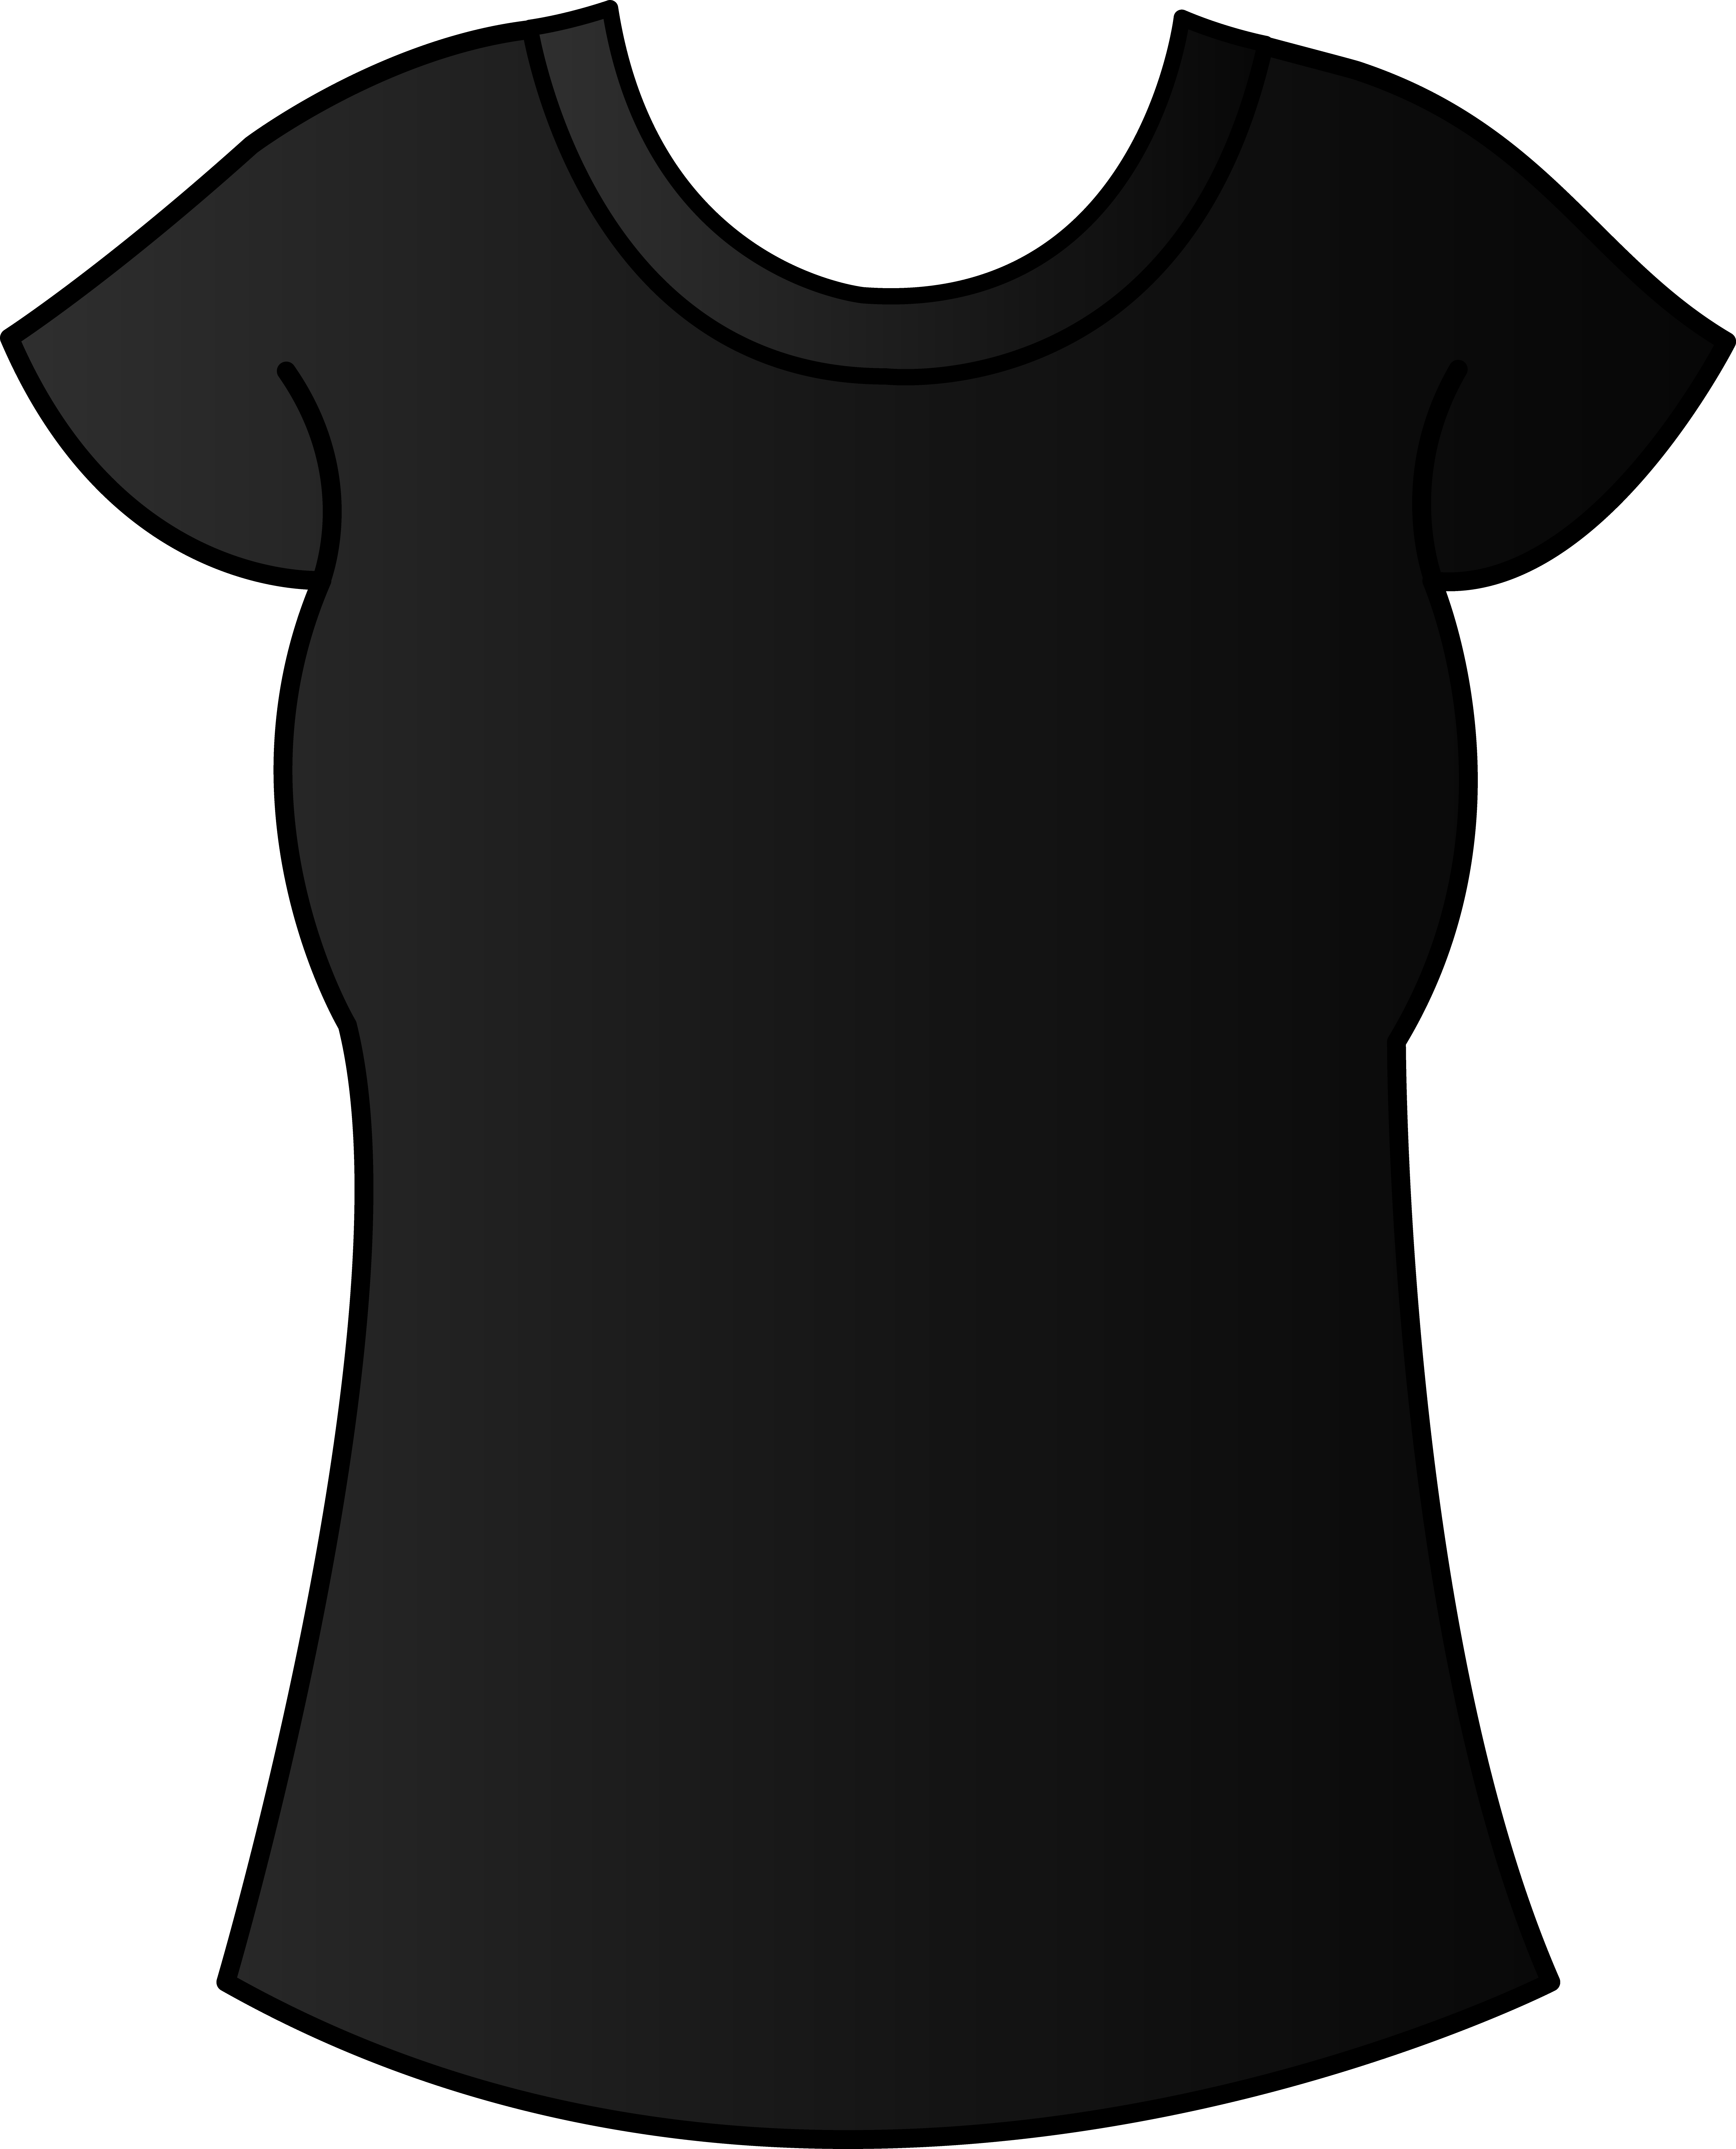 Women dress shirt clipart